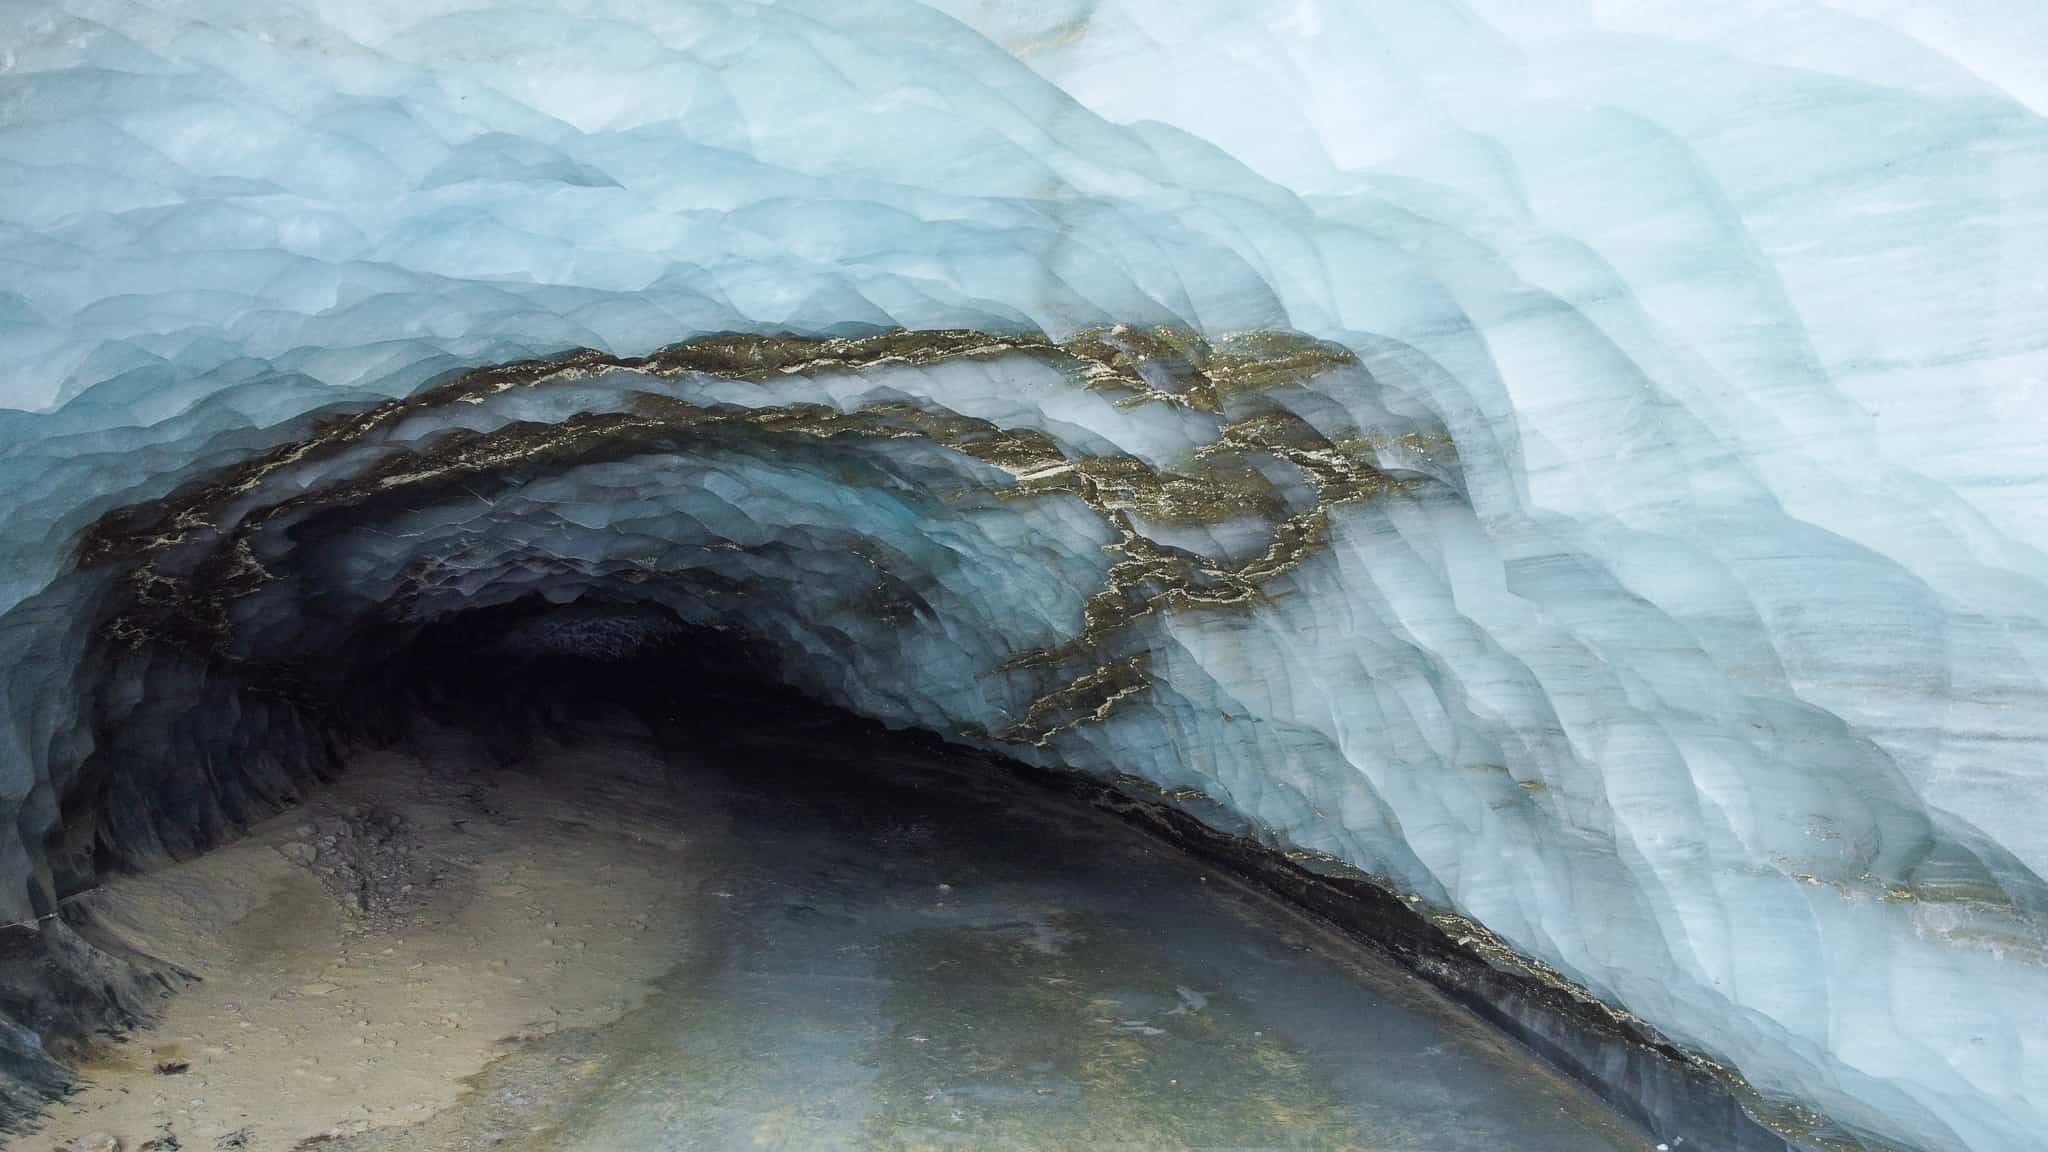 Visiting Castner Glacier Ice Cave